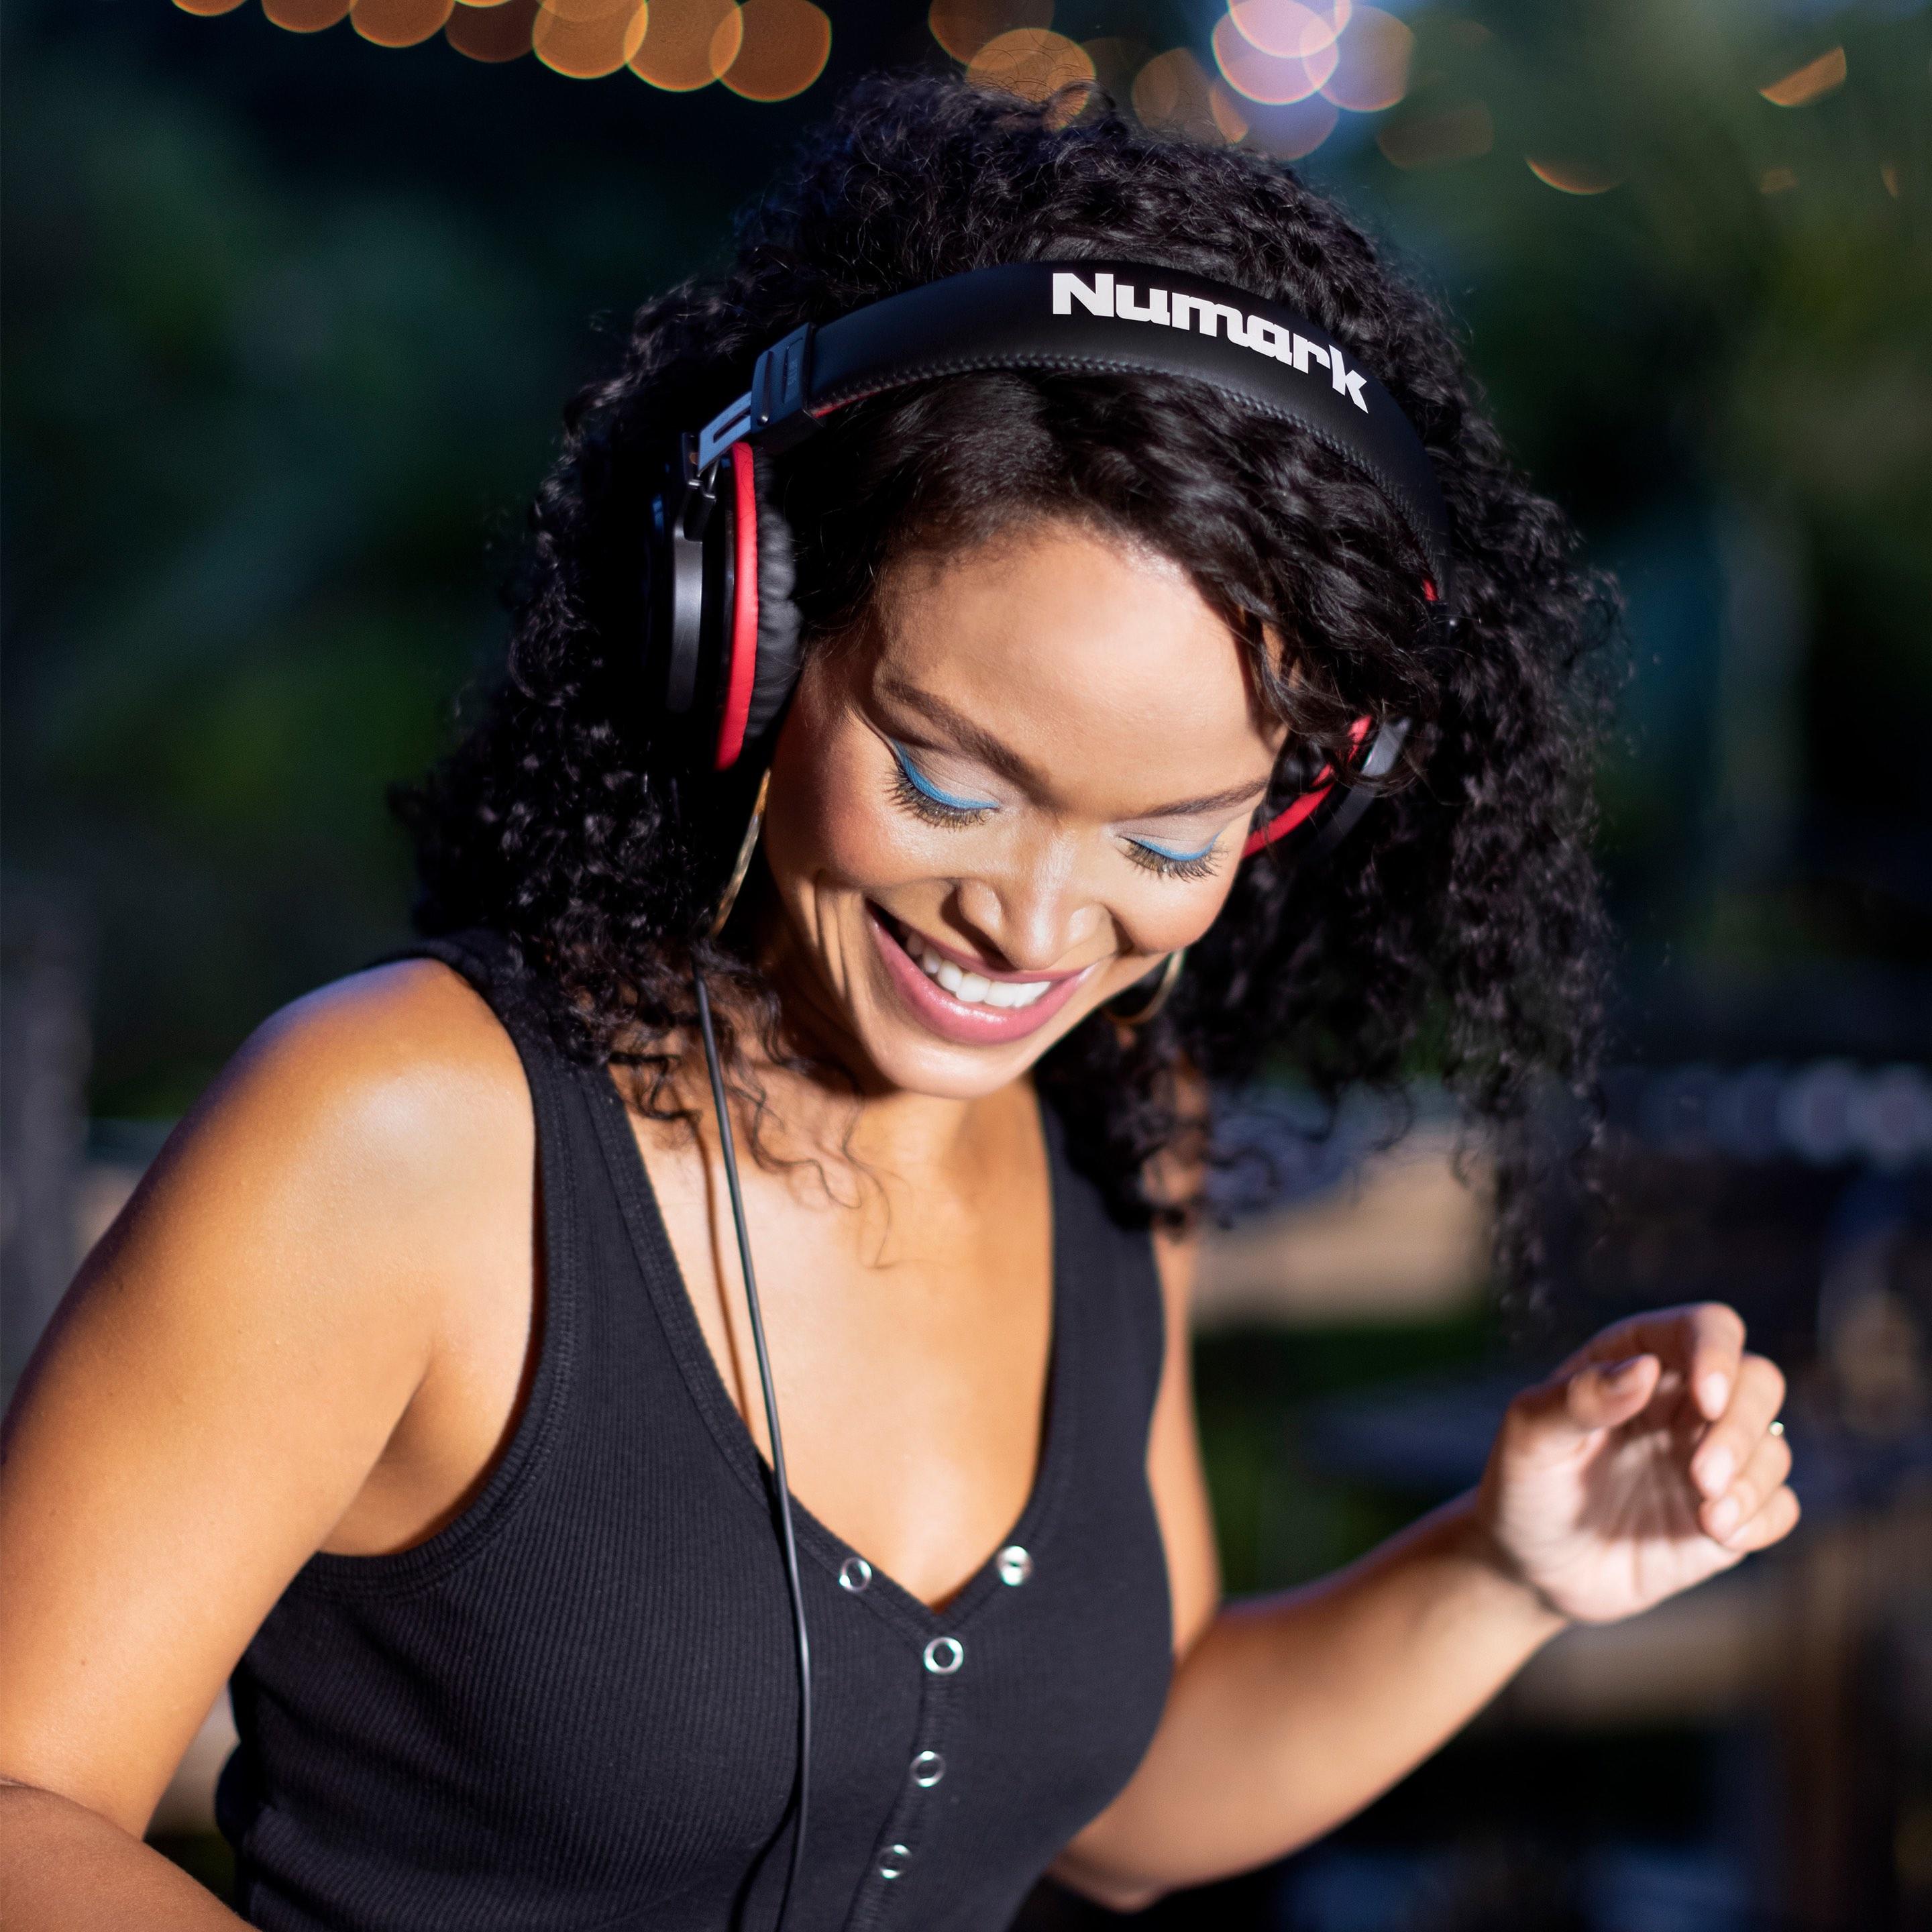 Numark HF175 headphones lifestyle 3